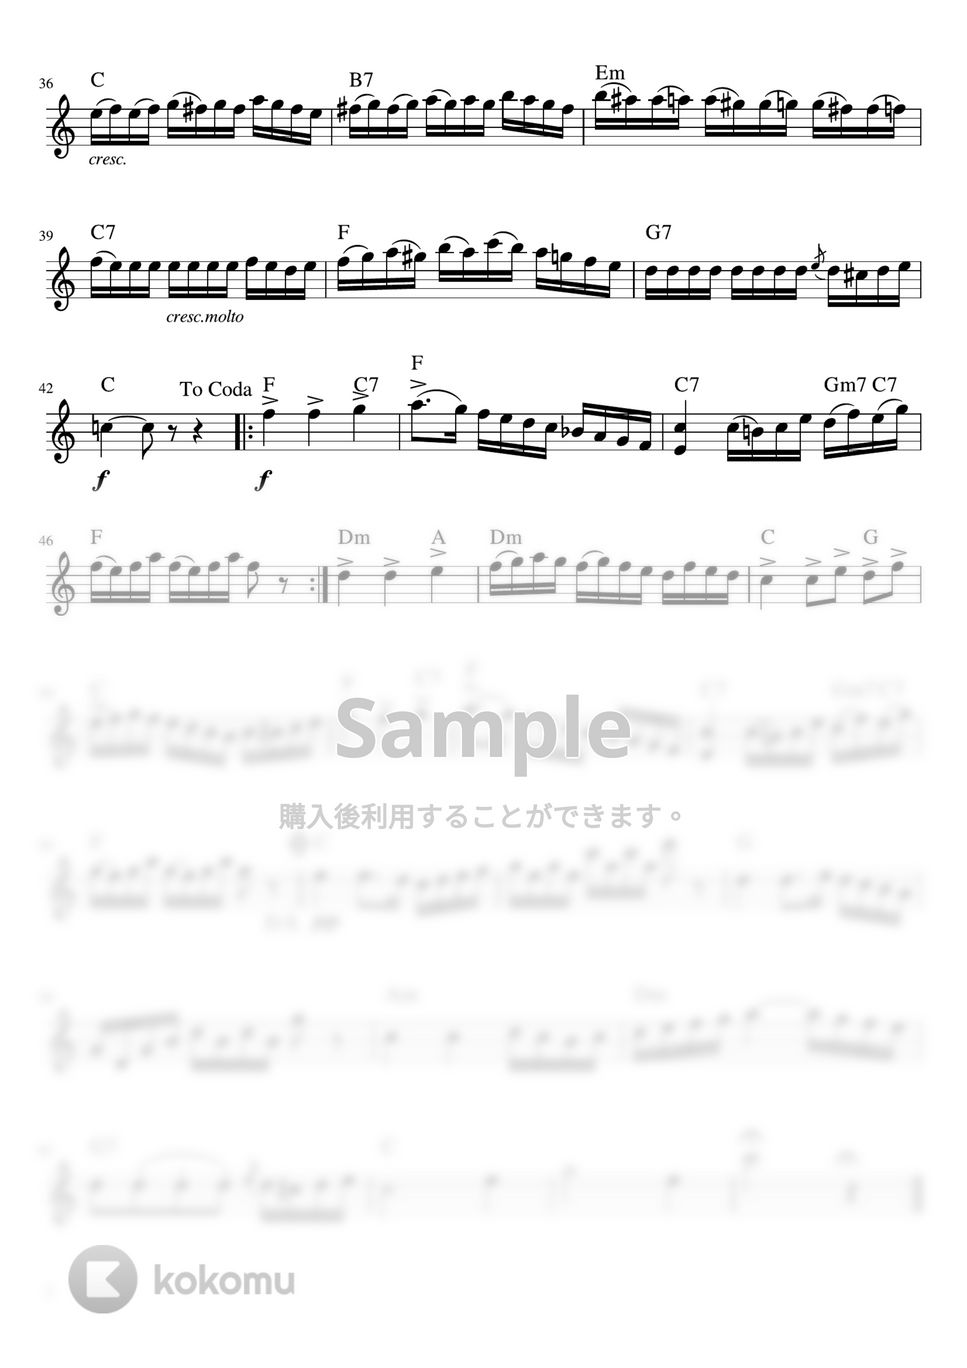 G.ビゼー - アルルの女組曲第2番「メヌエット」 (C・メロディーコード) by pfkaori